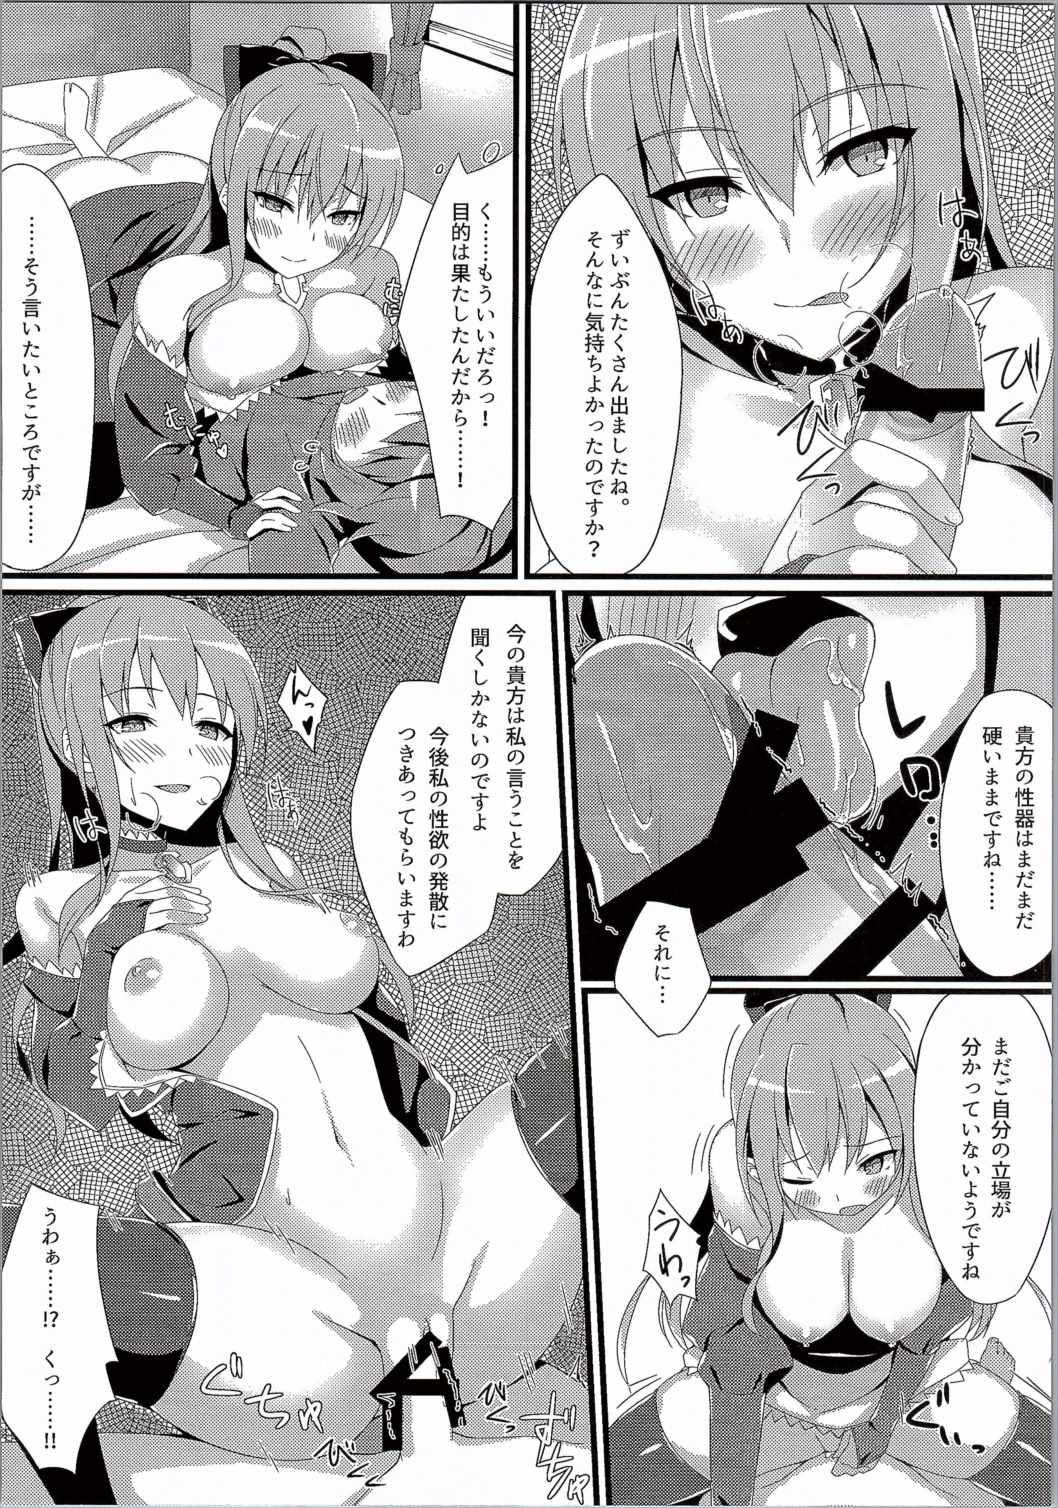 Rubbing Vira ga Ijimete Sashiagemasu! - Granblue fantasy Monstercock - Page 7